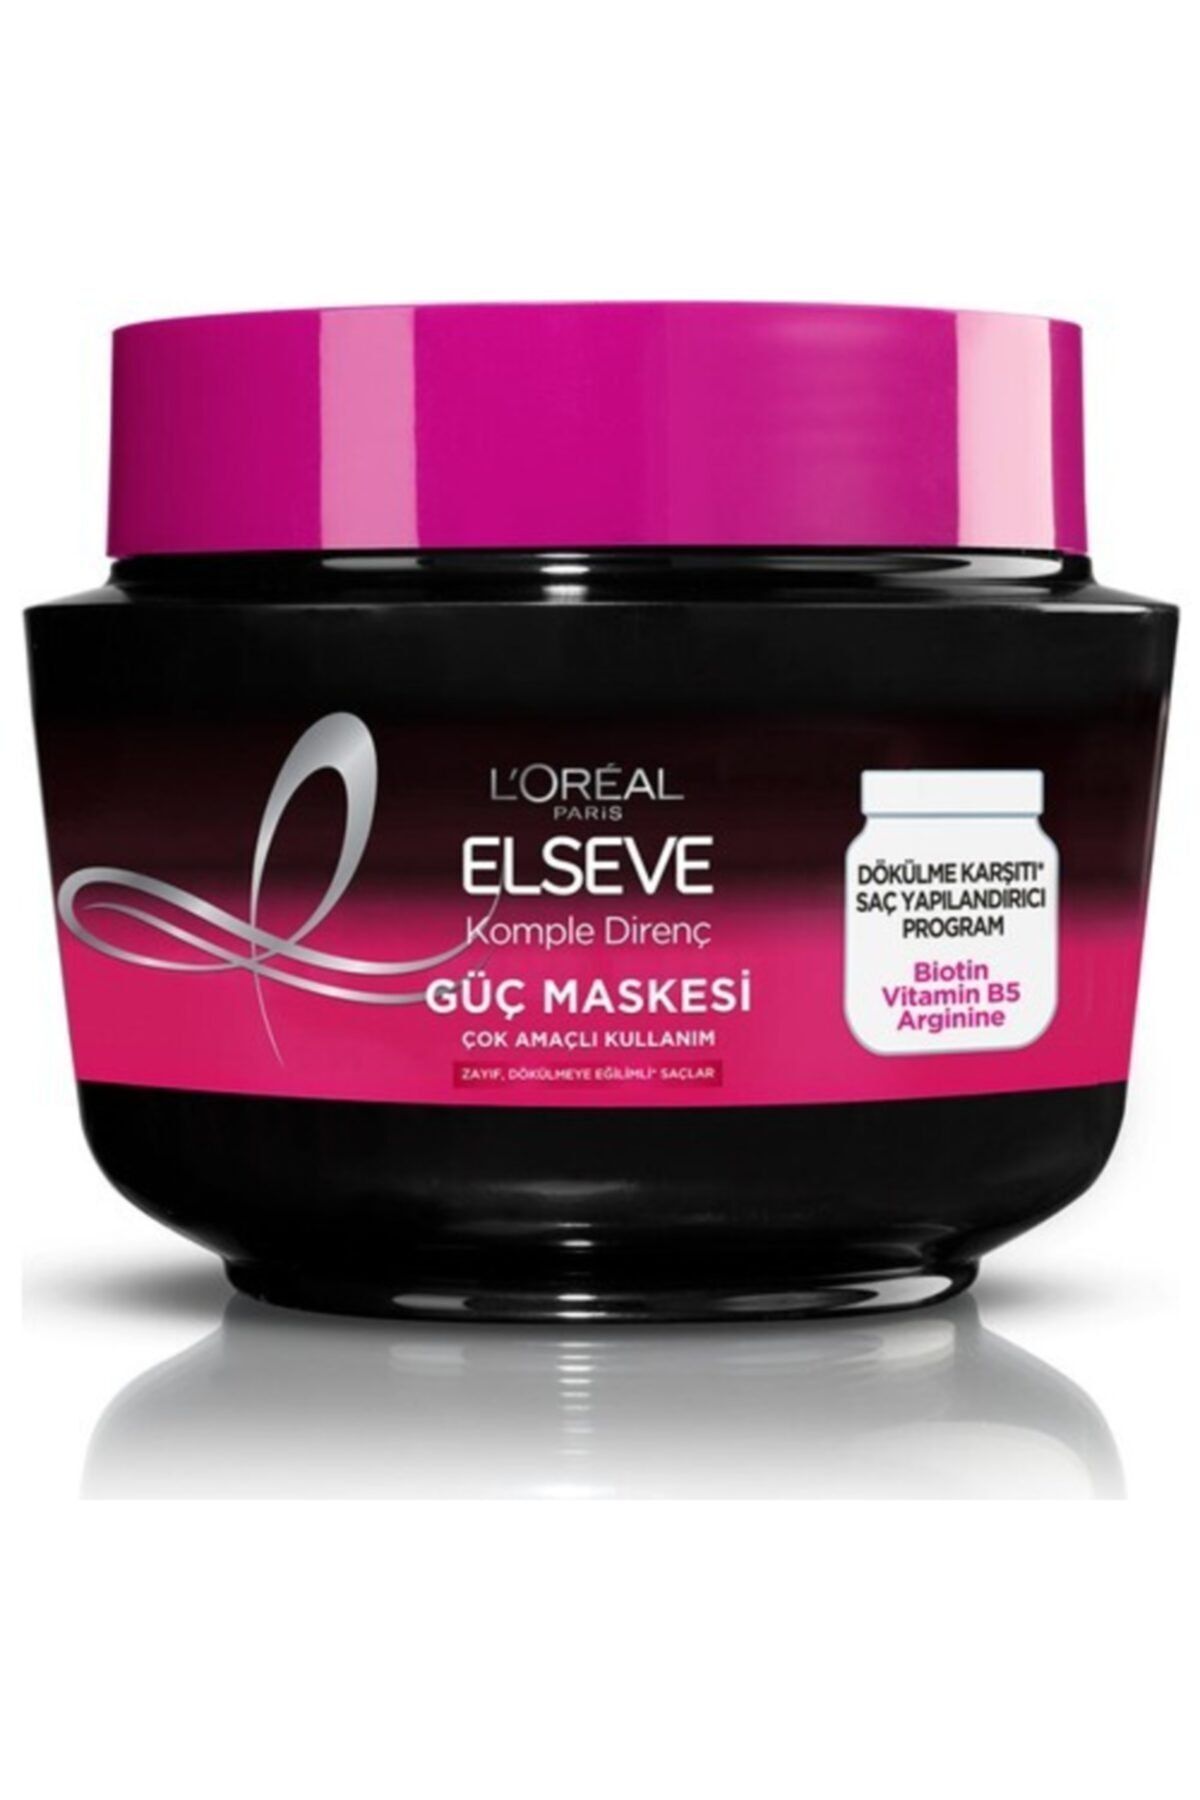 Elseve Saç Maske L'oréal Paris Komple Direnç Dökülme Karşıtı Güç Maskesi 300 Ml